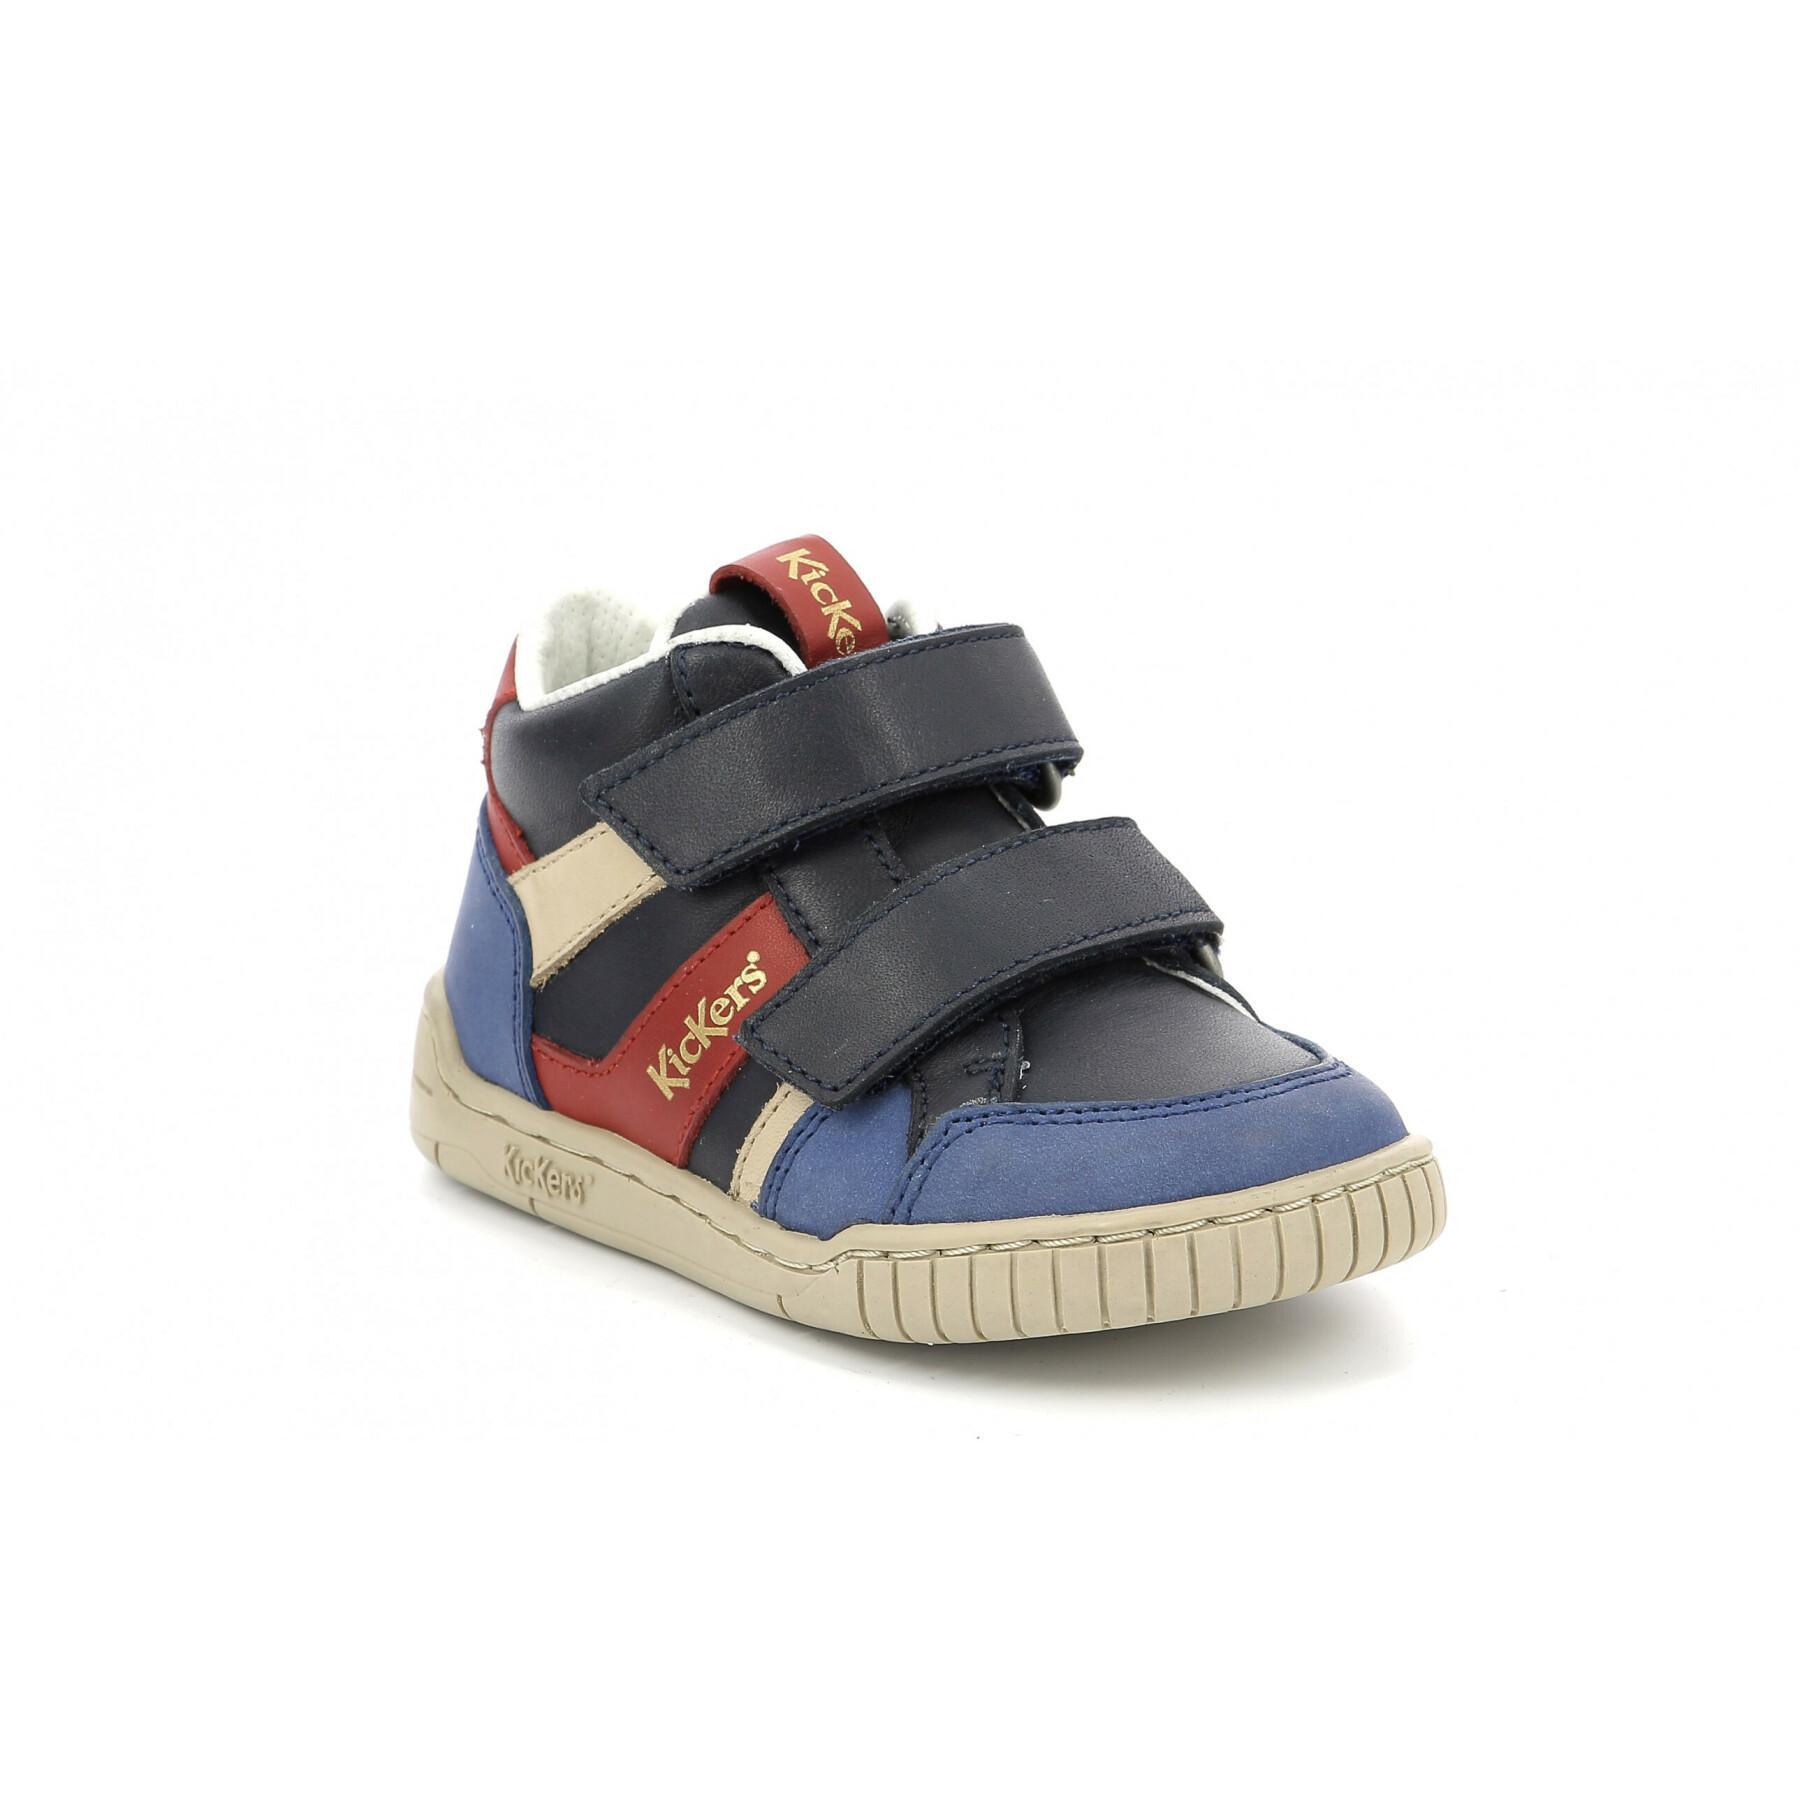 Sneakers für Babies Kickers Wincky Vel